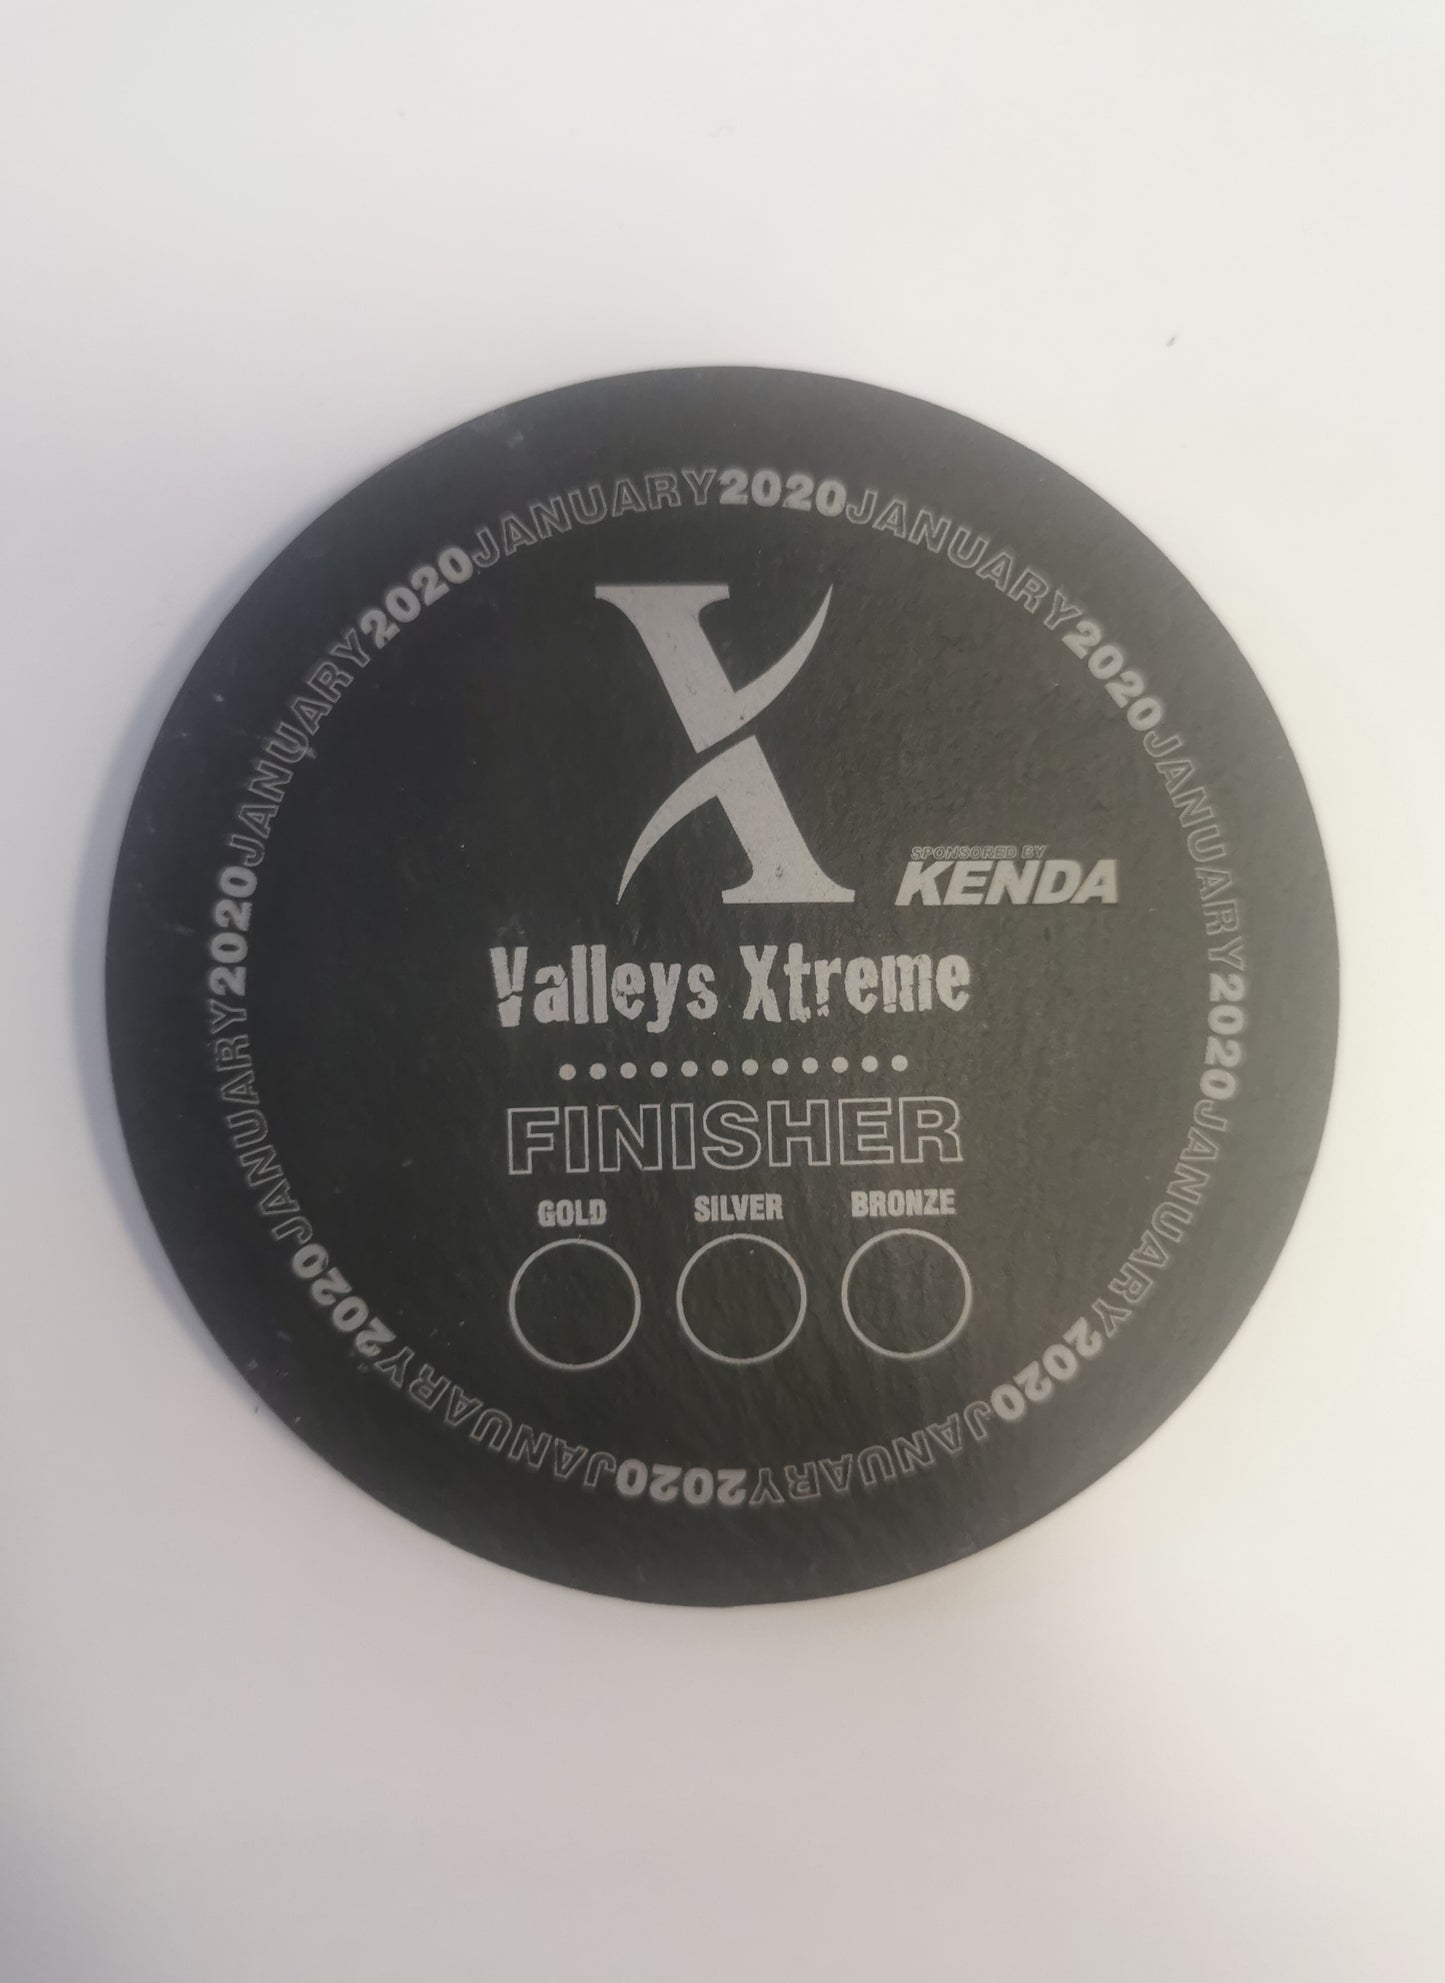 Valleys Xtreme 2020 Finishing Coaster